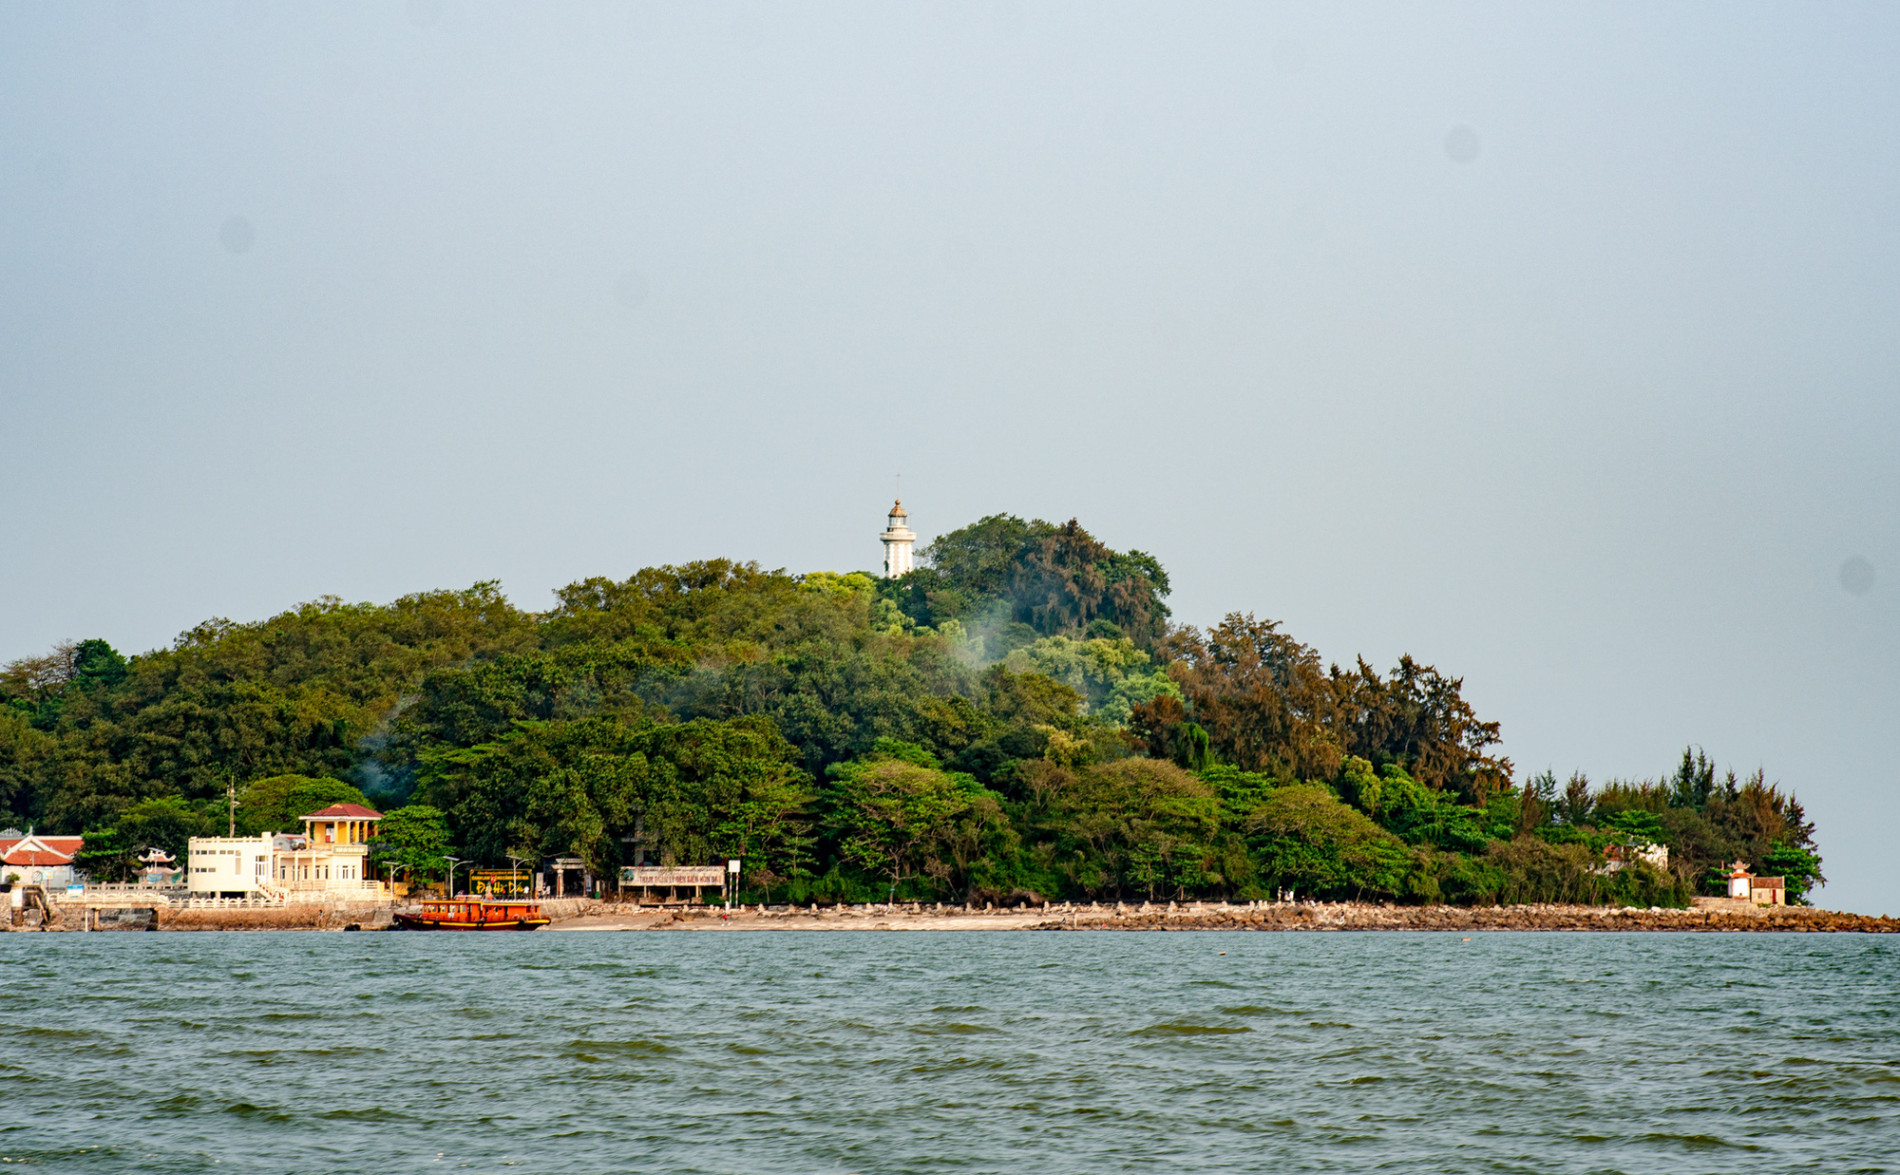 Khám phá đảo bé hạt tiêu có hải đăng cổ nhất Việt Nam, 124 năm vững vàng trước sóng gió - Ảnh 14.